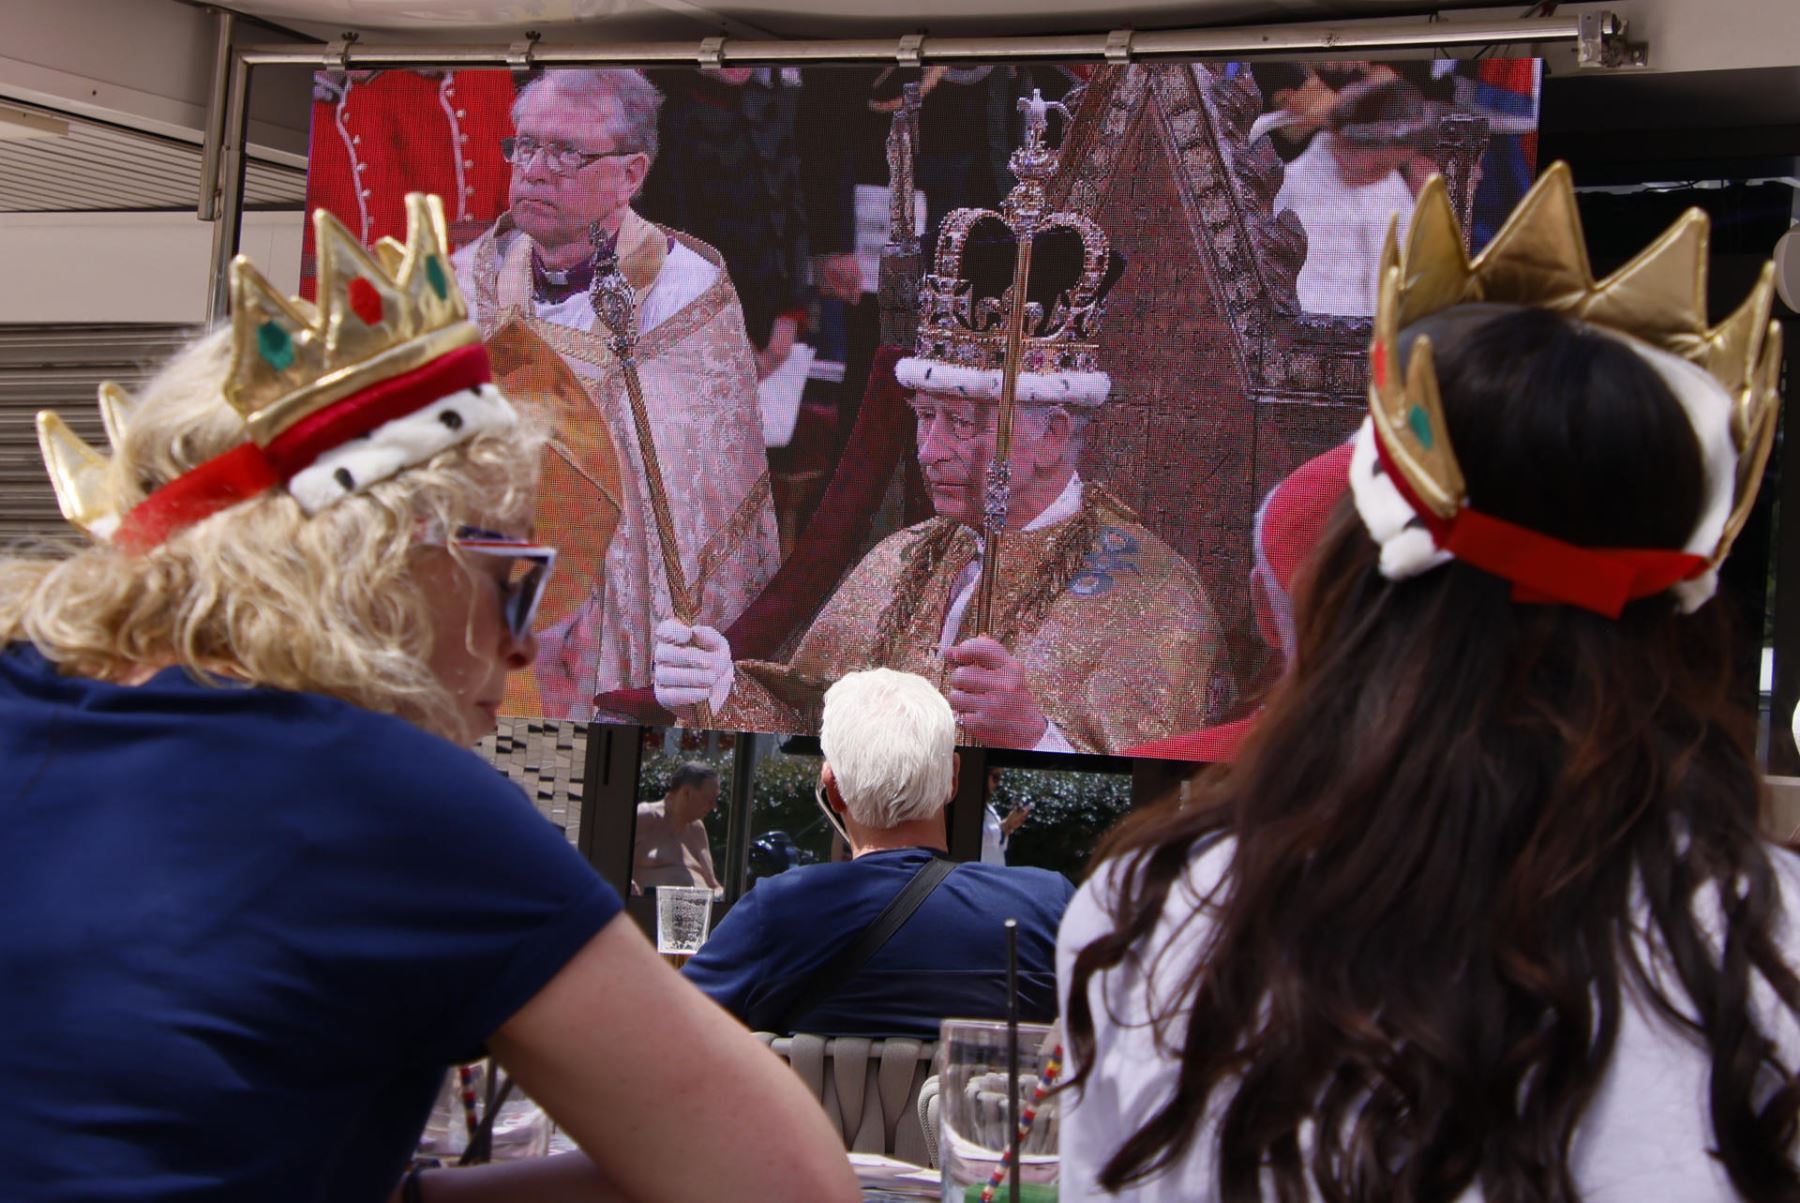 Un grupo de turistas británicos este sábado en Magaluf (Calviá, Baleares), sigue en directo la coronación del rey Carlos III, con coronas de juguete en la cabeza.
Foto: AFP